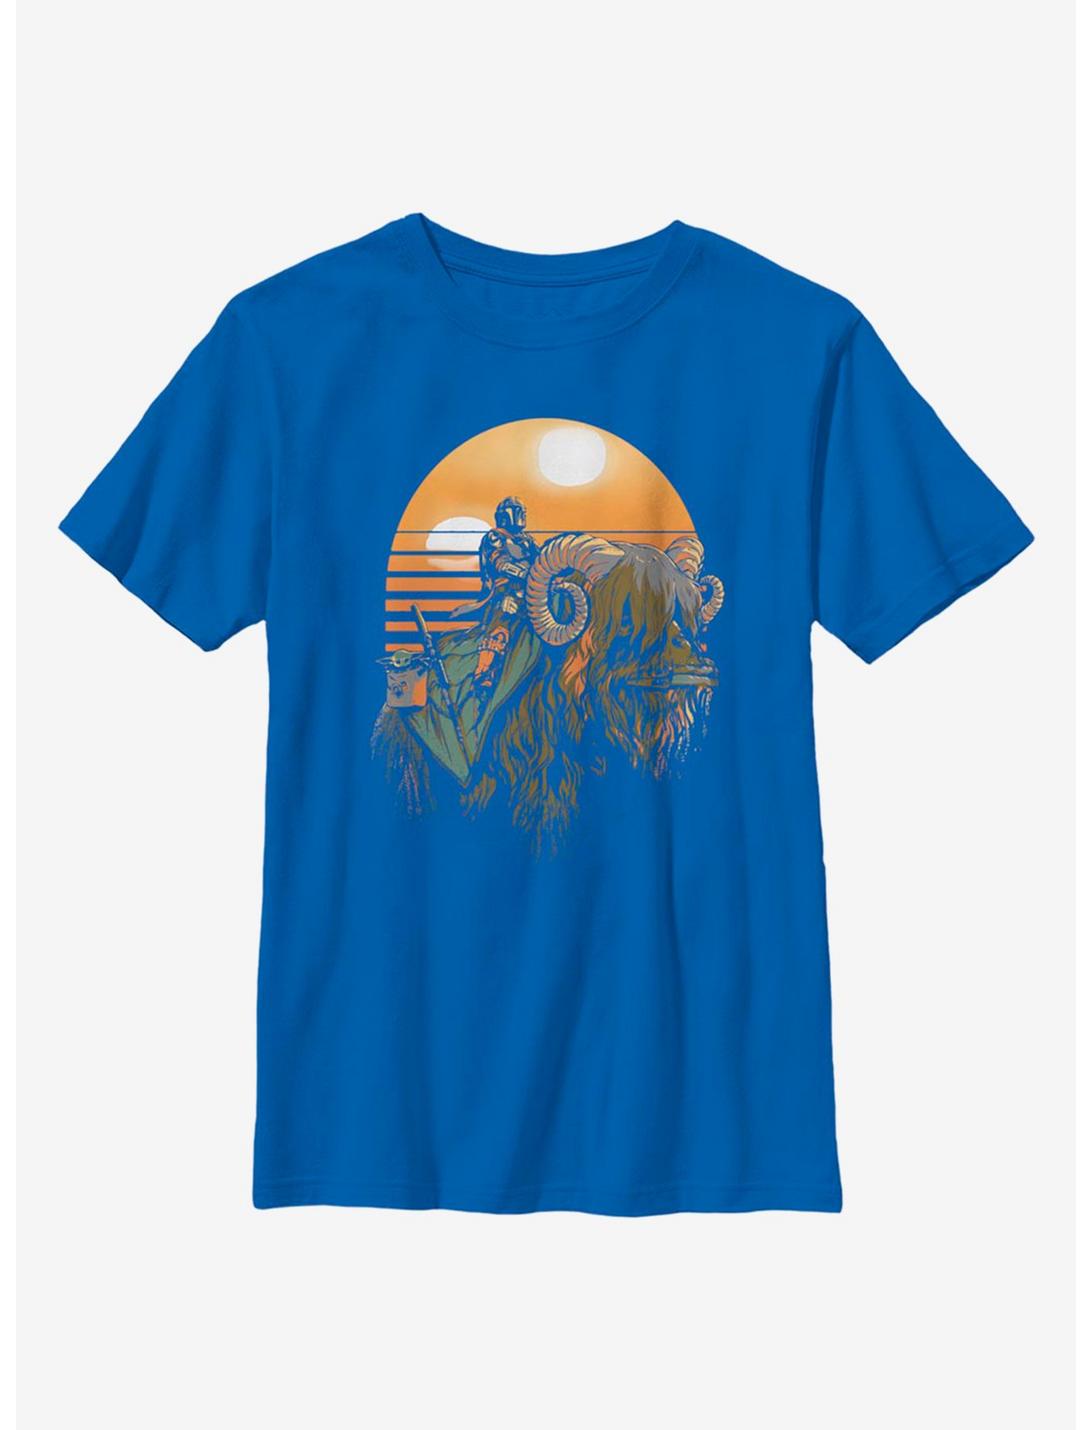 Star Wars The Mandalorian Bantha Riders Youth T-Shirt, ROYAL, hi-res